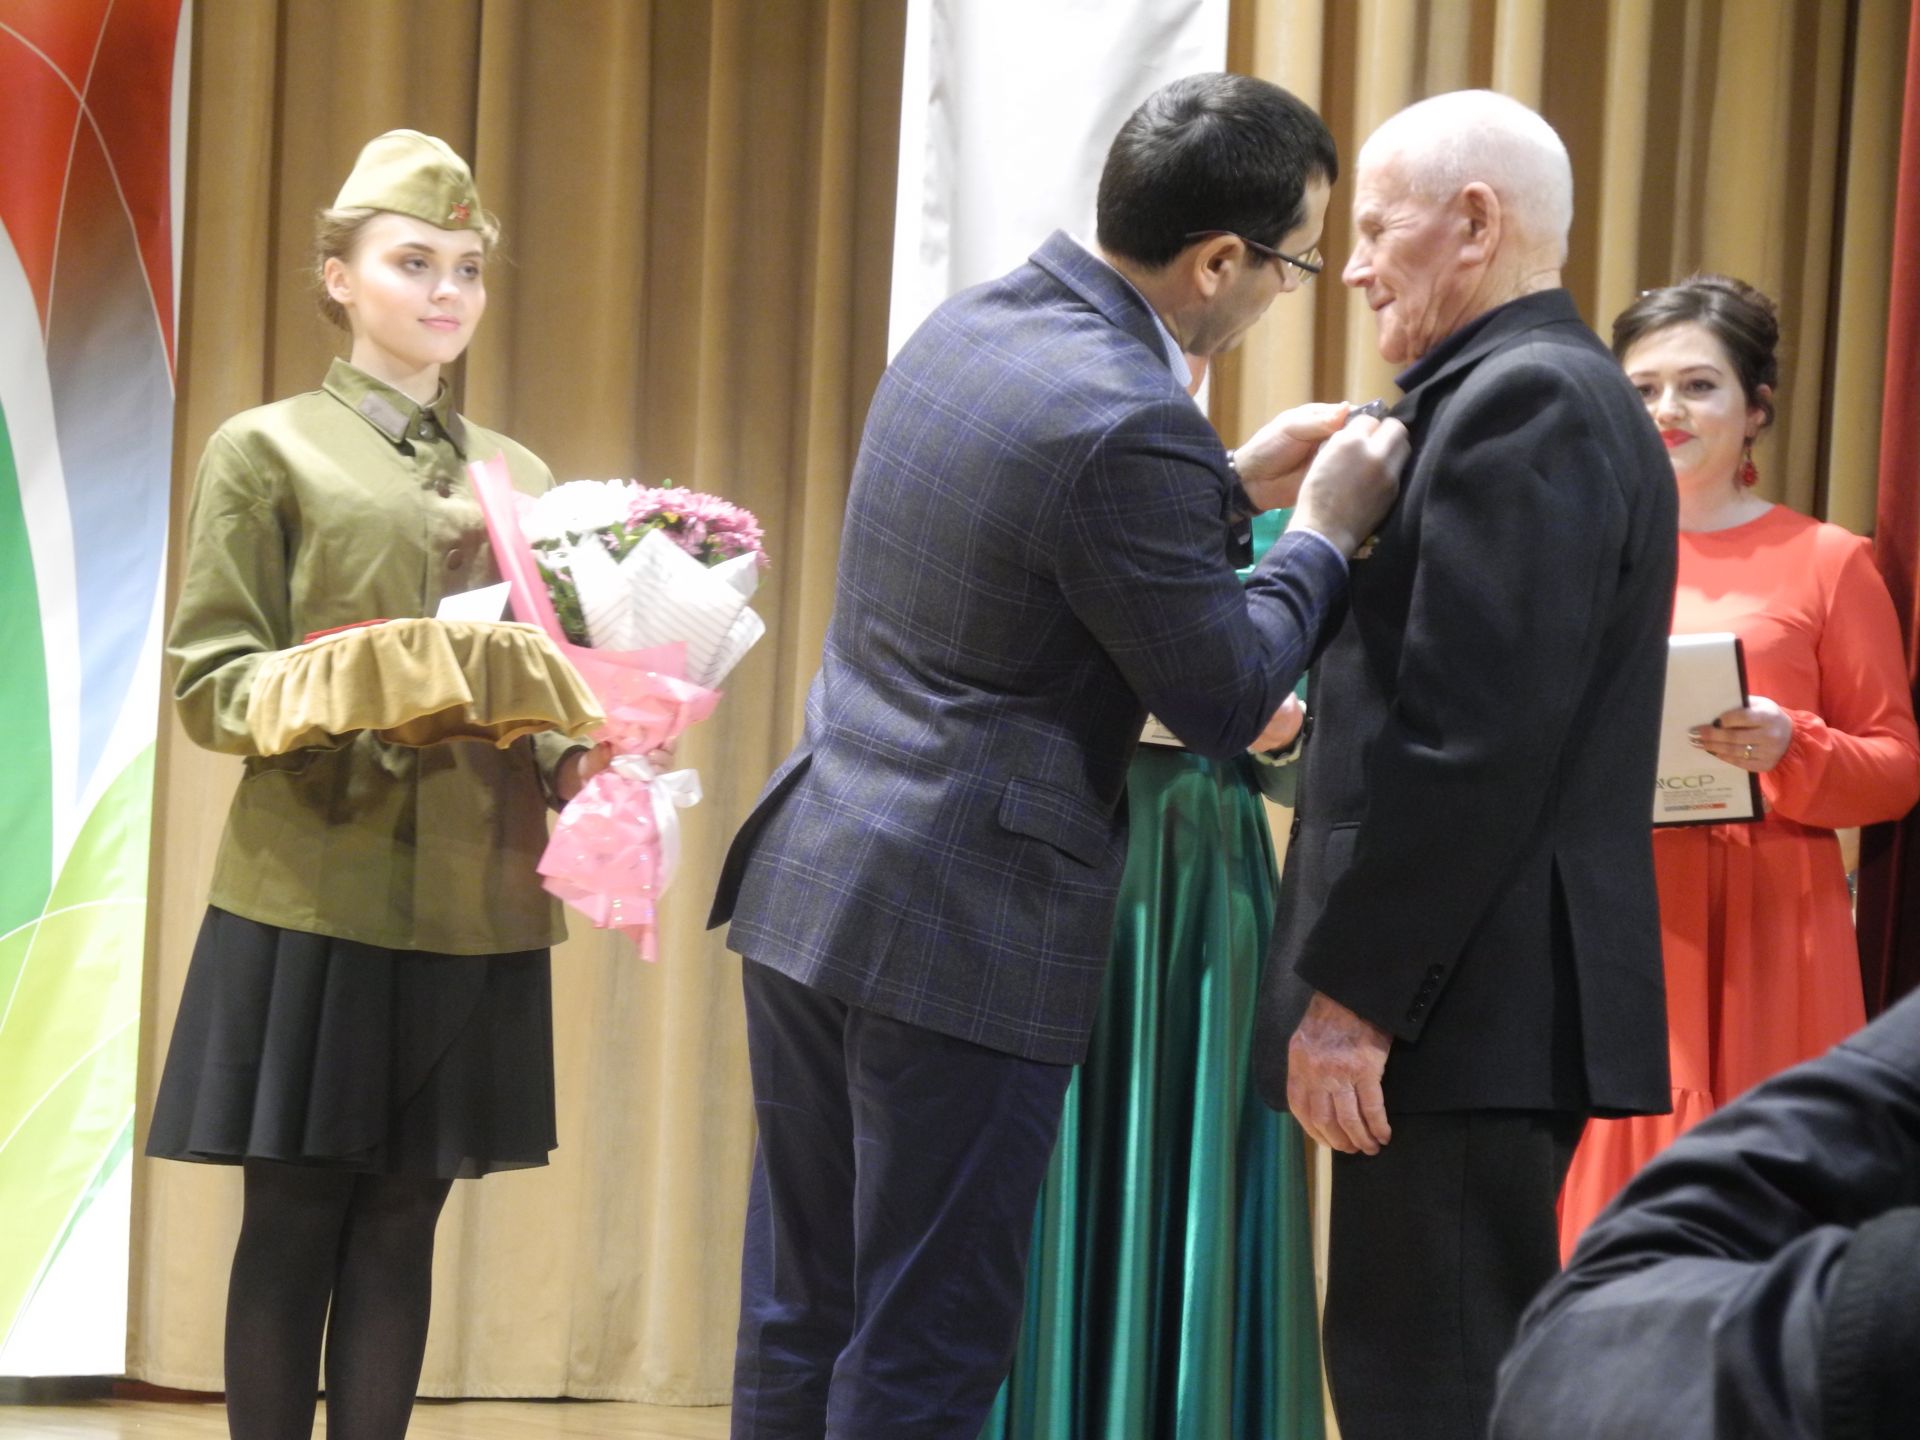 В конкурсе  "Солдат - всегда солдат", посвященном Дню защитника Отечества, победу одержала команда районного отдела образования&nbsp;